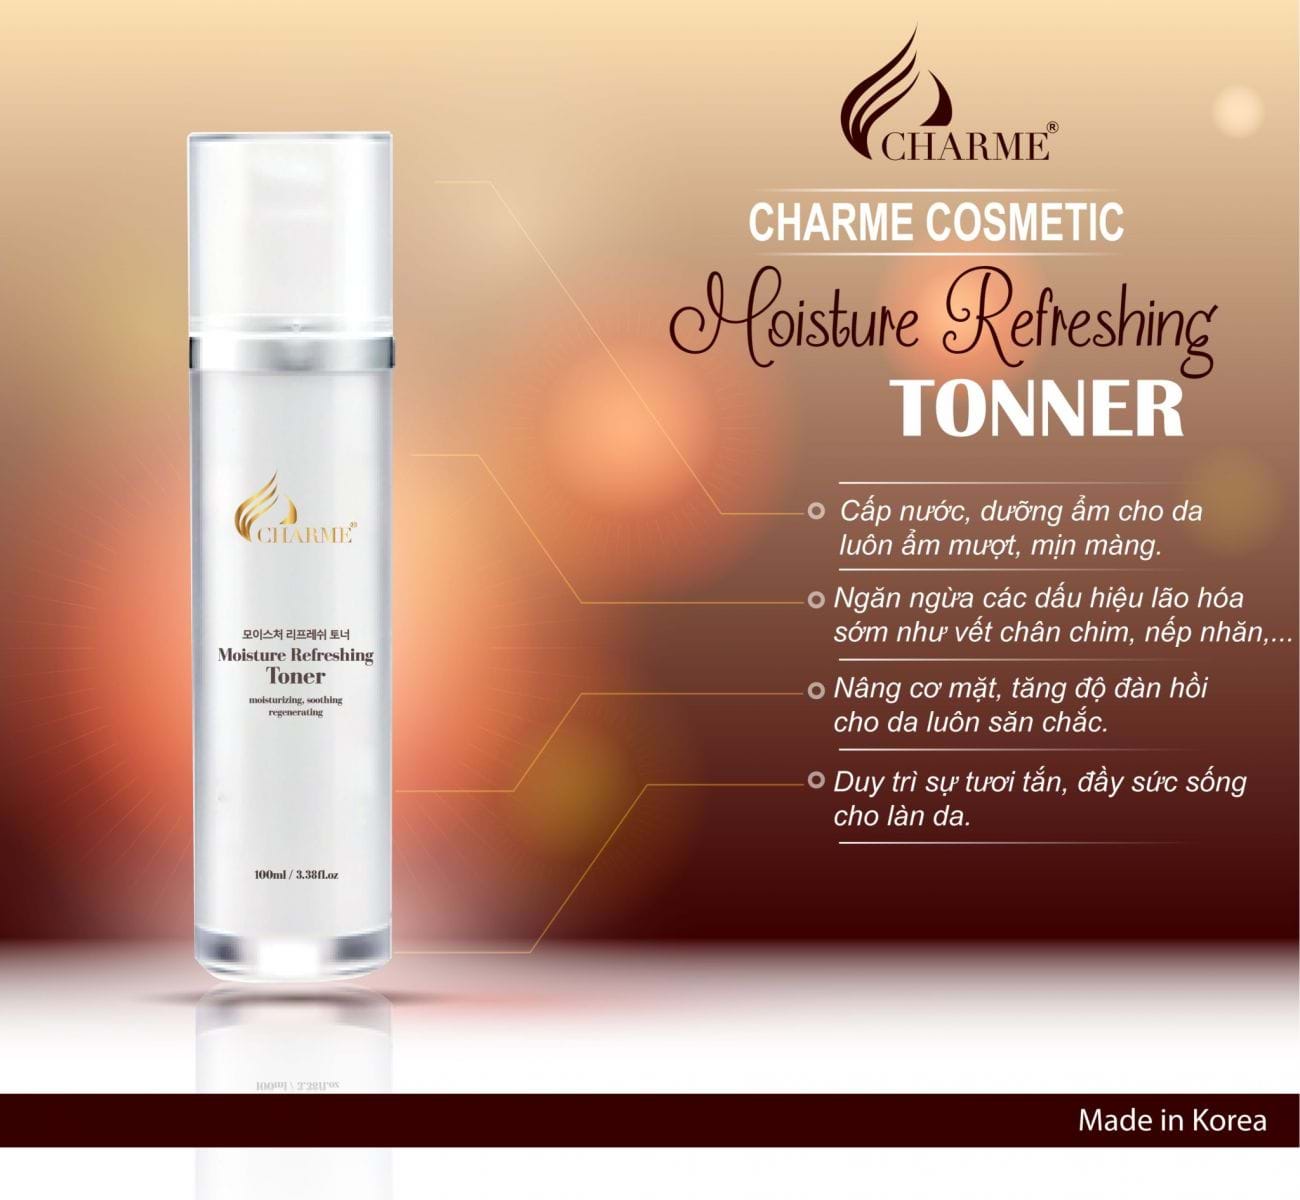 Toner có thực sự là sản phẩm cần thiết khi chăm sóc da hàng ngày?